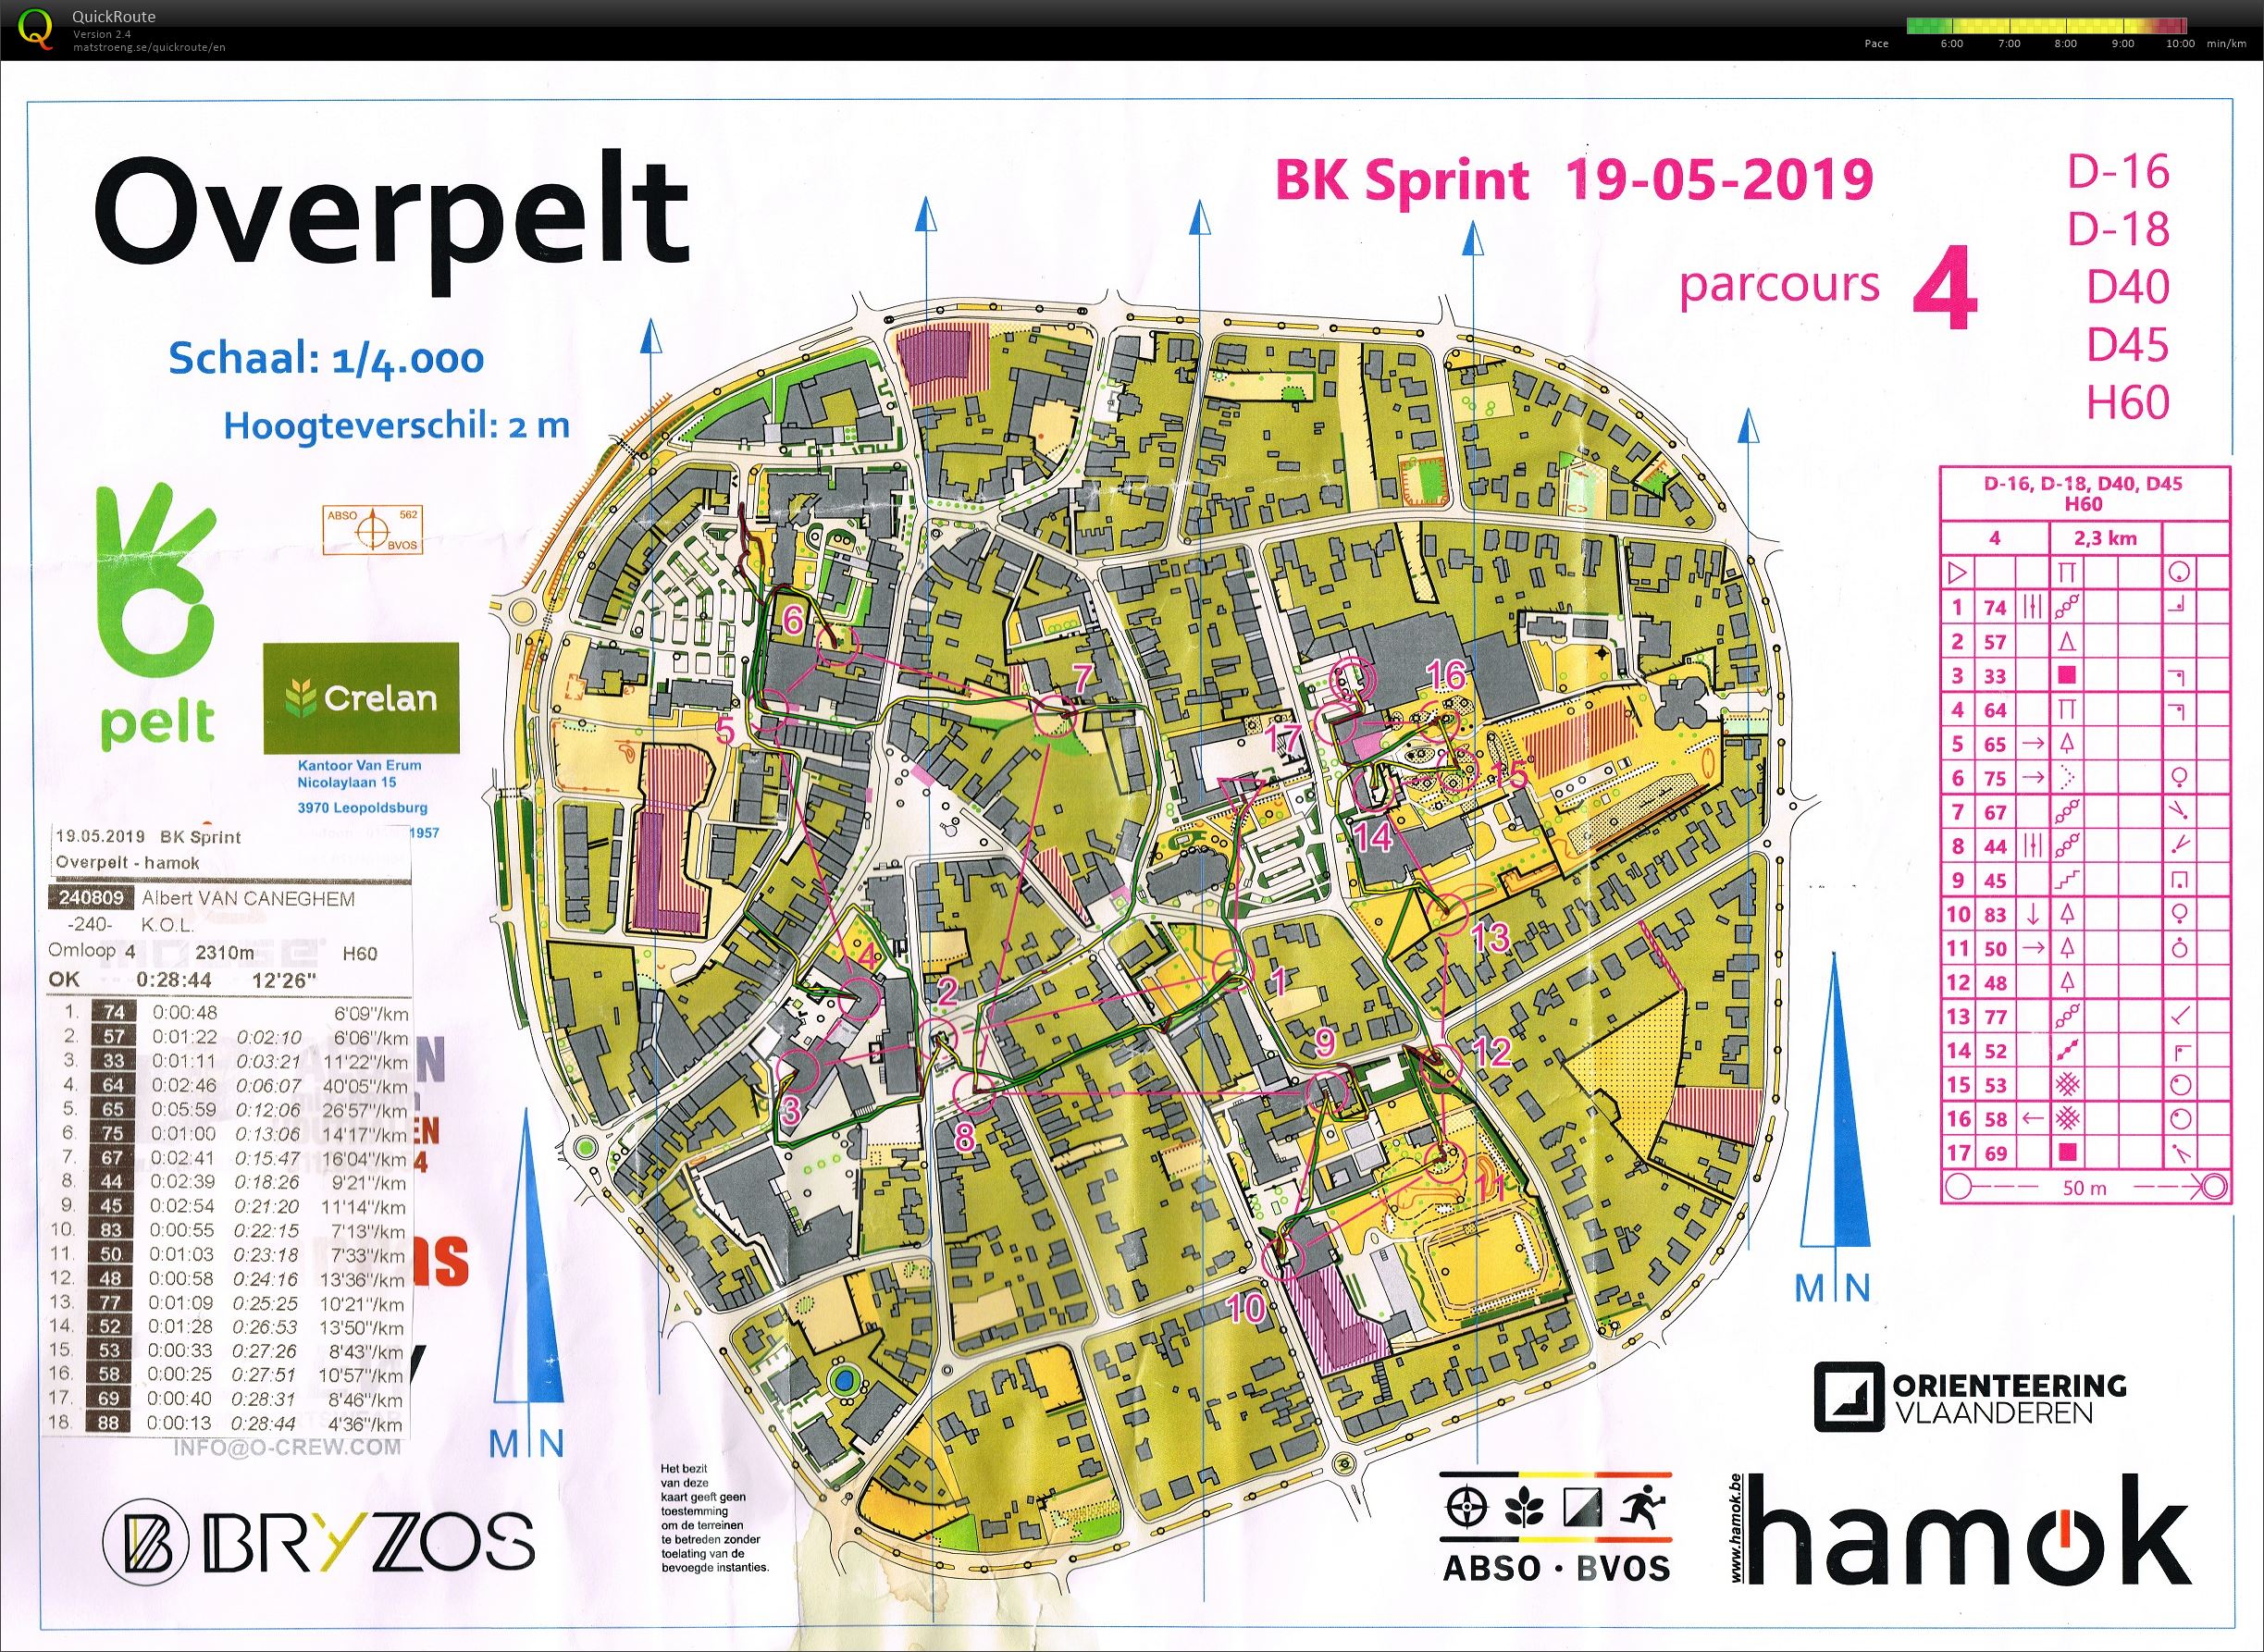 Overpelt BK Sprint (19/05/2019)